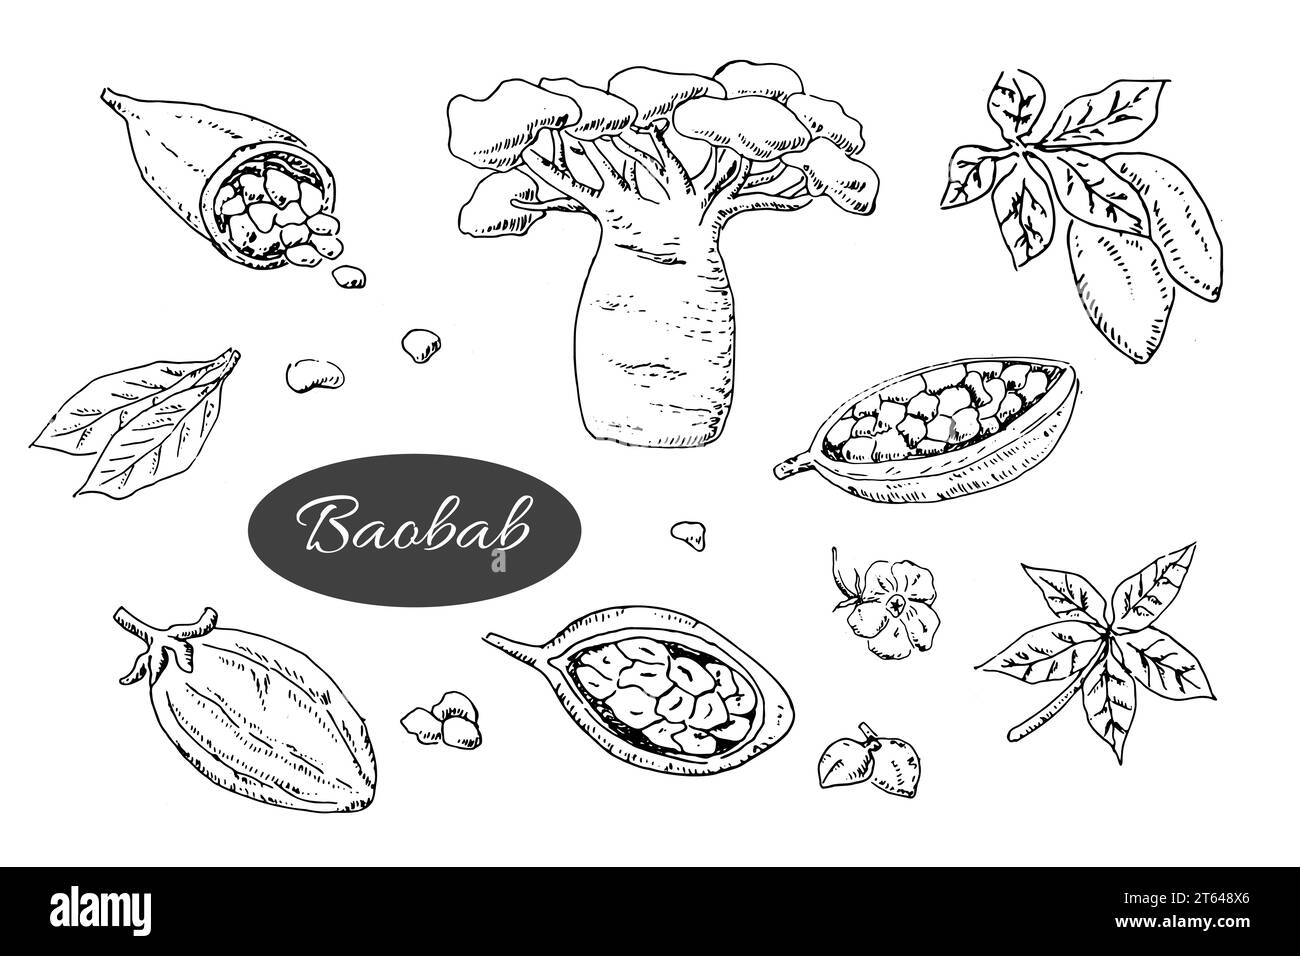 baobab arbre et haricots, feuilles, fleurs, graines - set Illustration de Vecteur